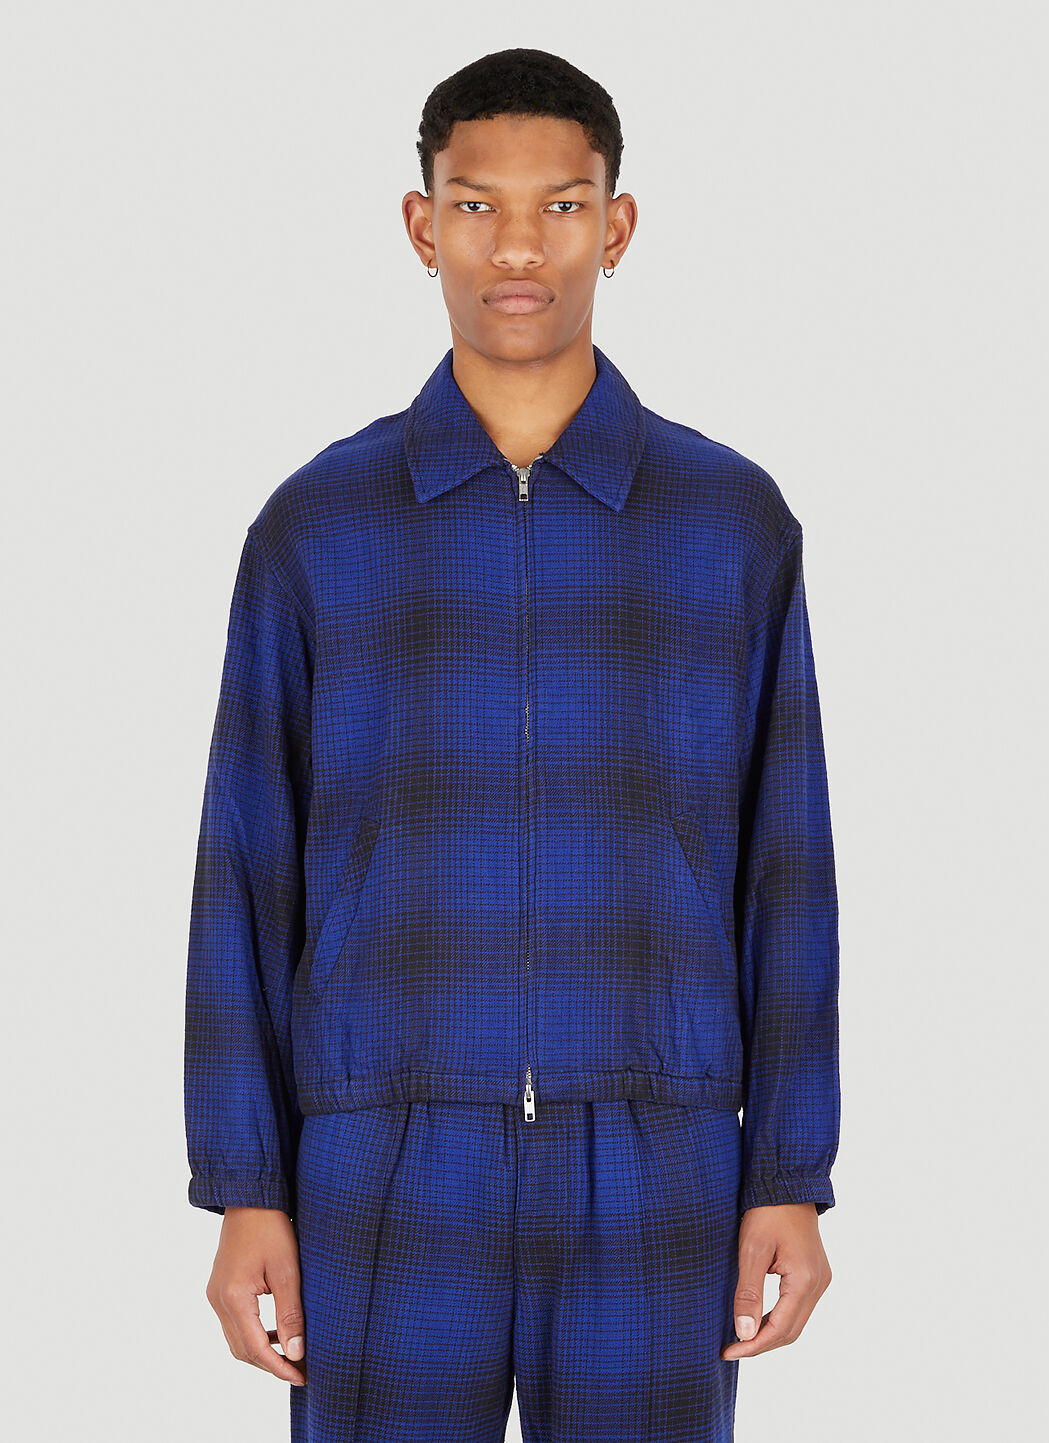 NOMA t.d. Ombre Plaid Blouson Jacket in Blue | LN-CC®